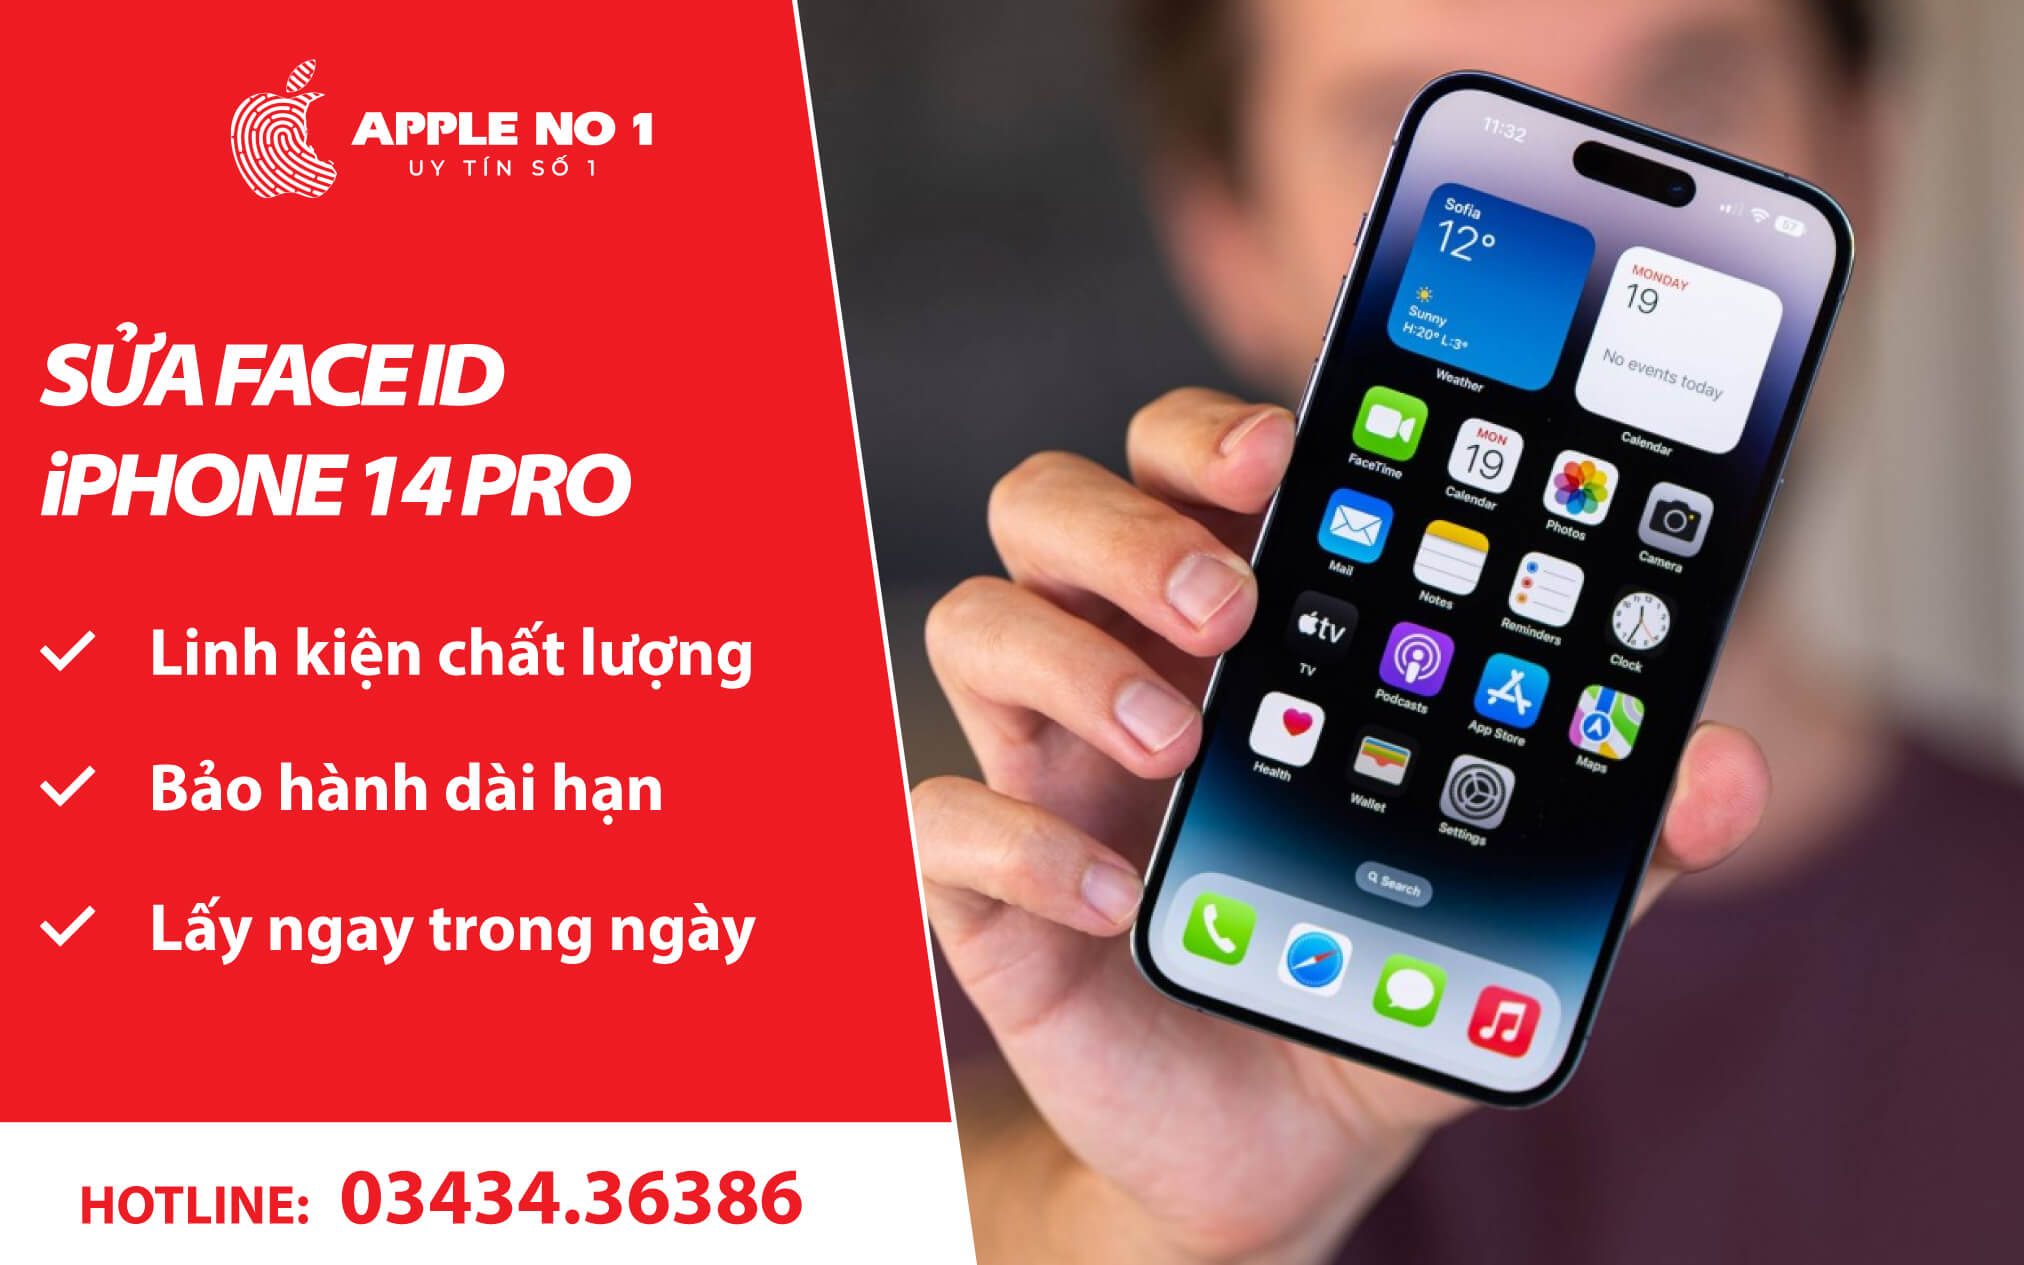 Sửa Face iD iPhone 14 Pro chuyên nghiệp, lấy ngay tại APPLENO1.VN